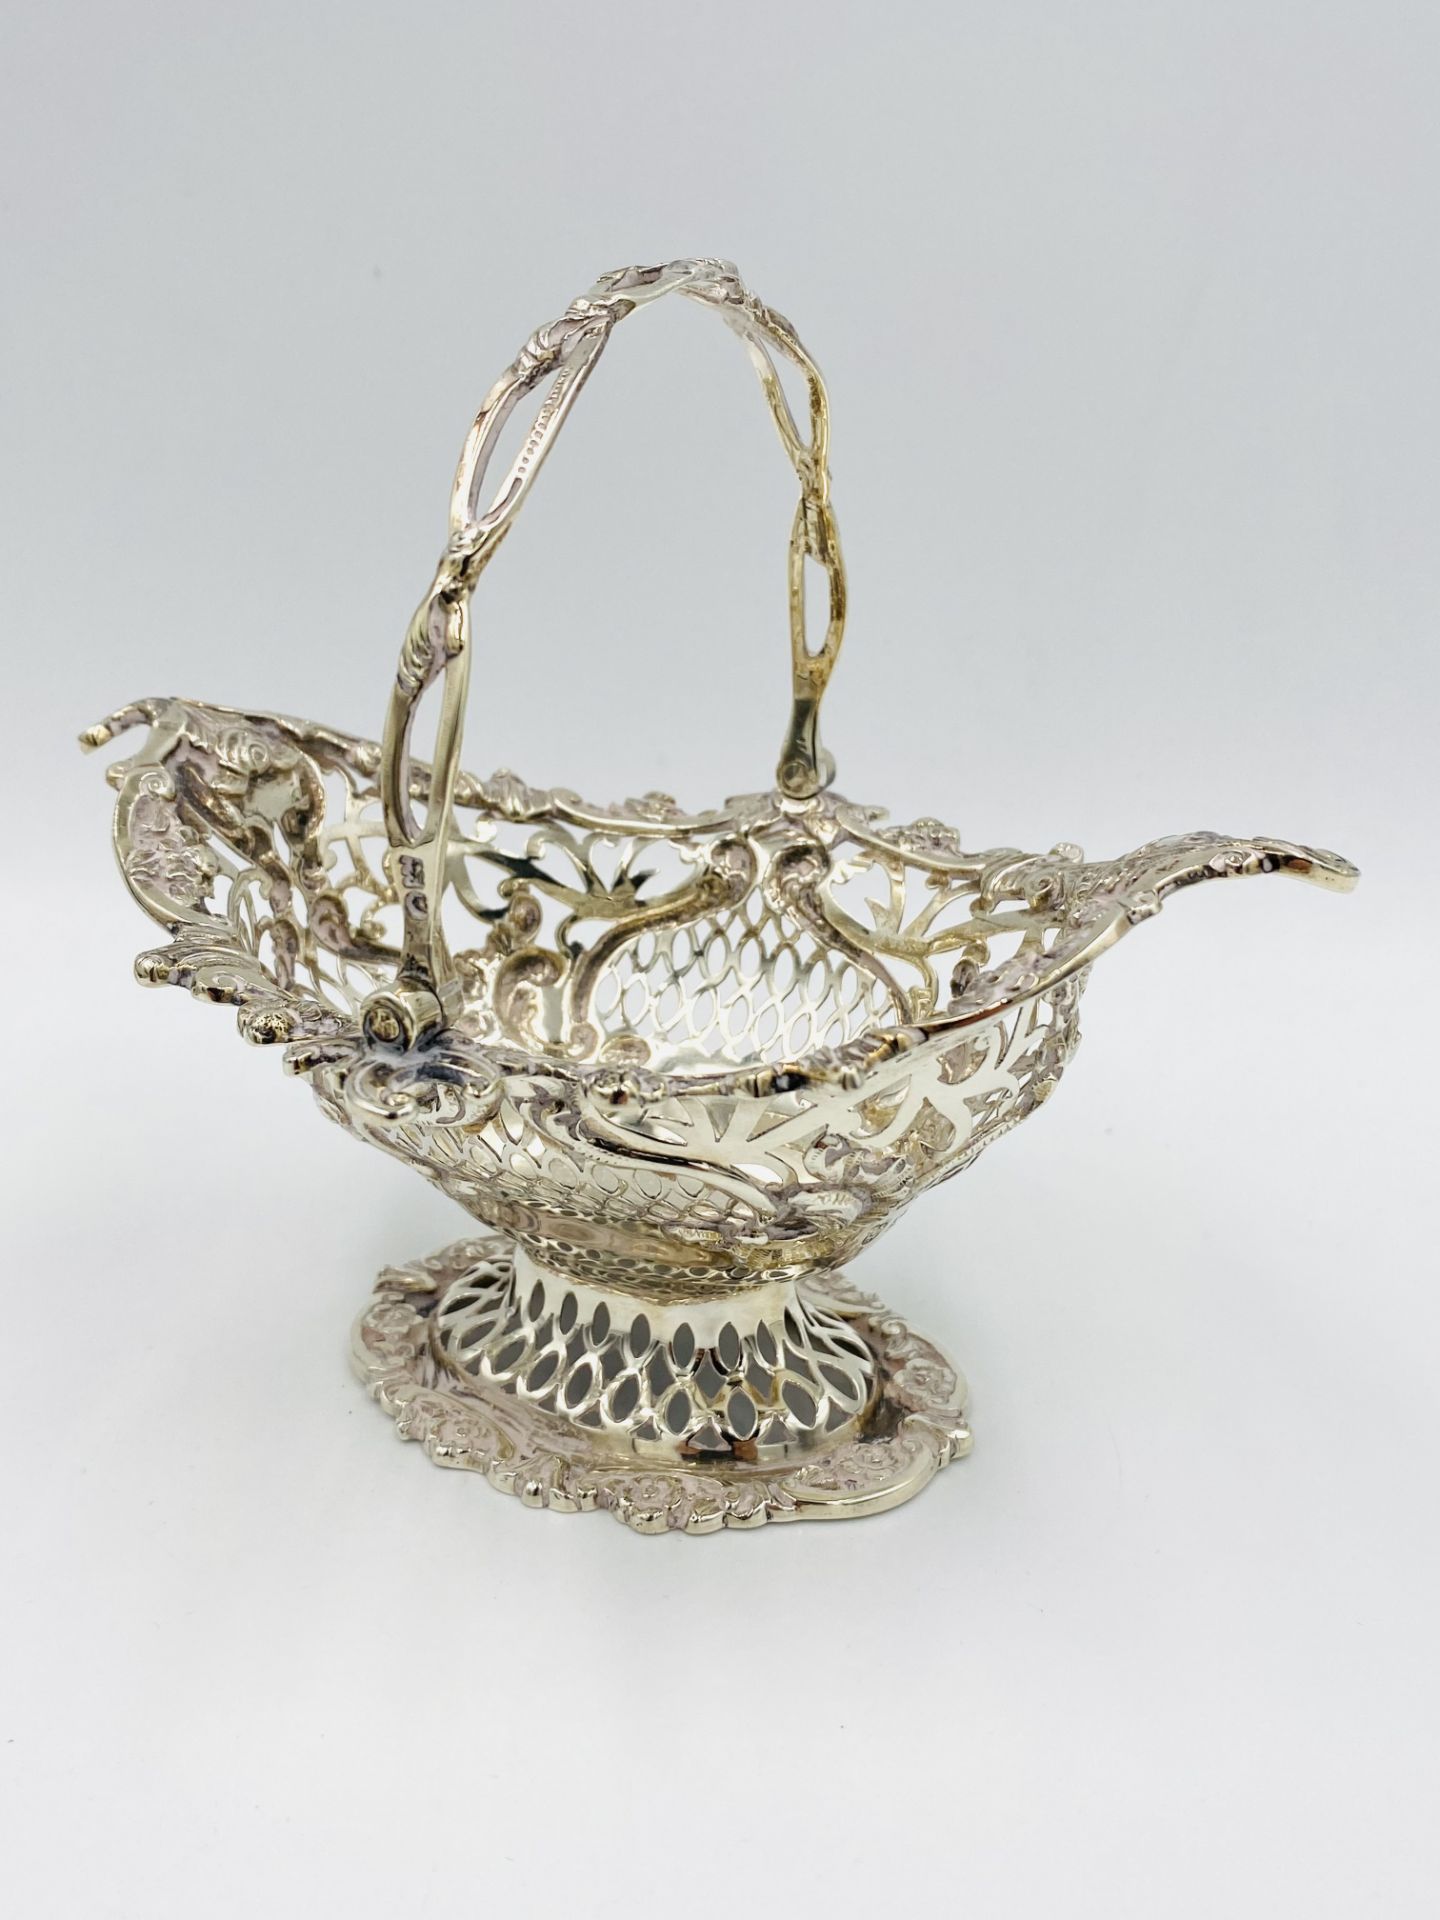 Pierced silver basket, London 1909